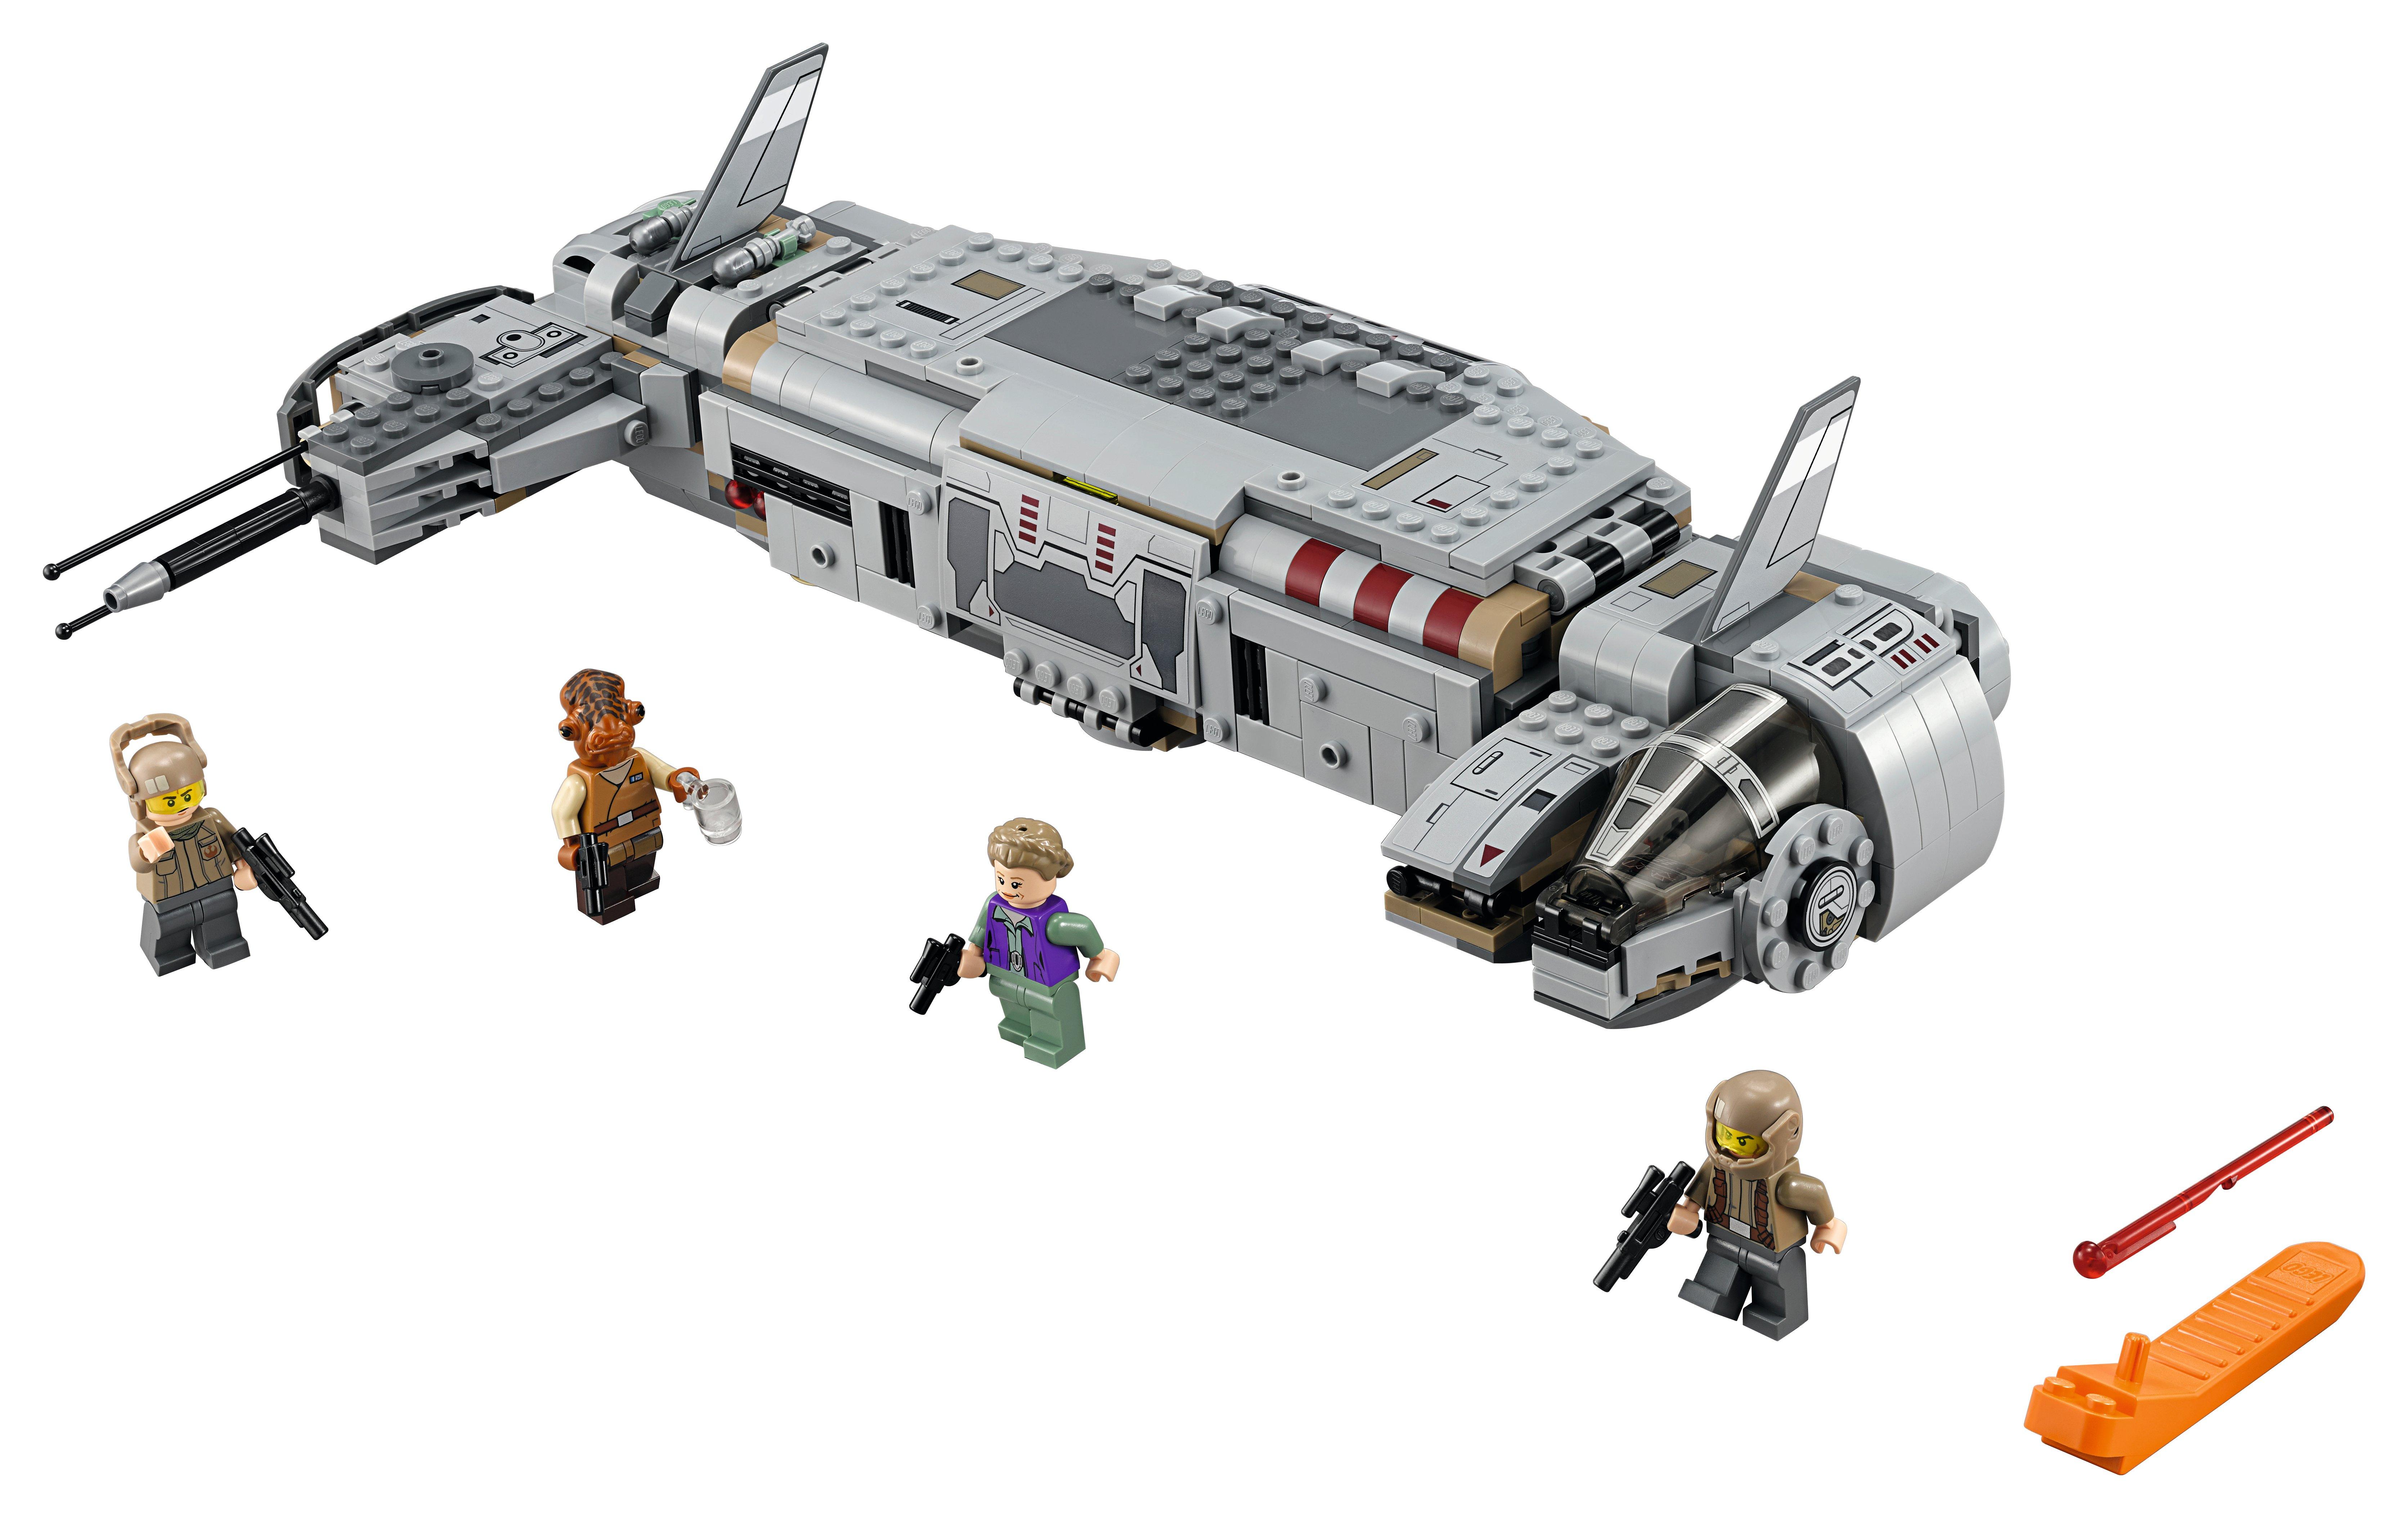 LEGO®  75140 Resistance Troop Transport™ 